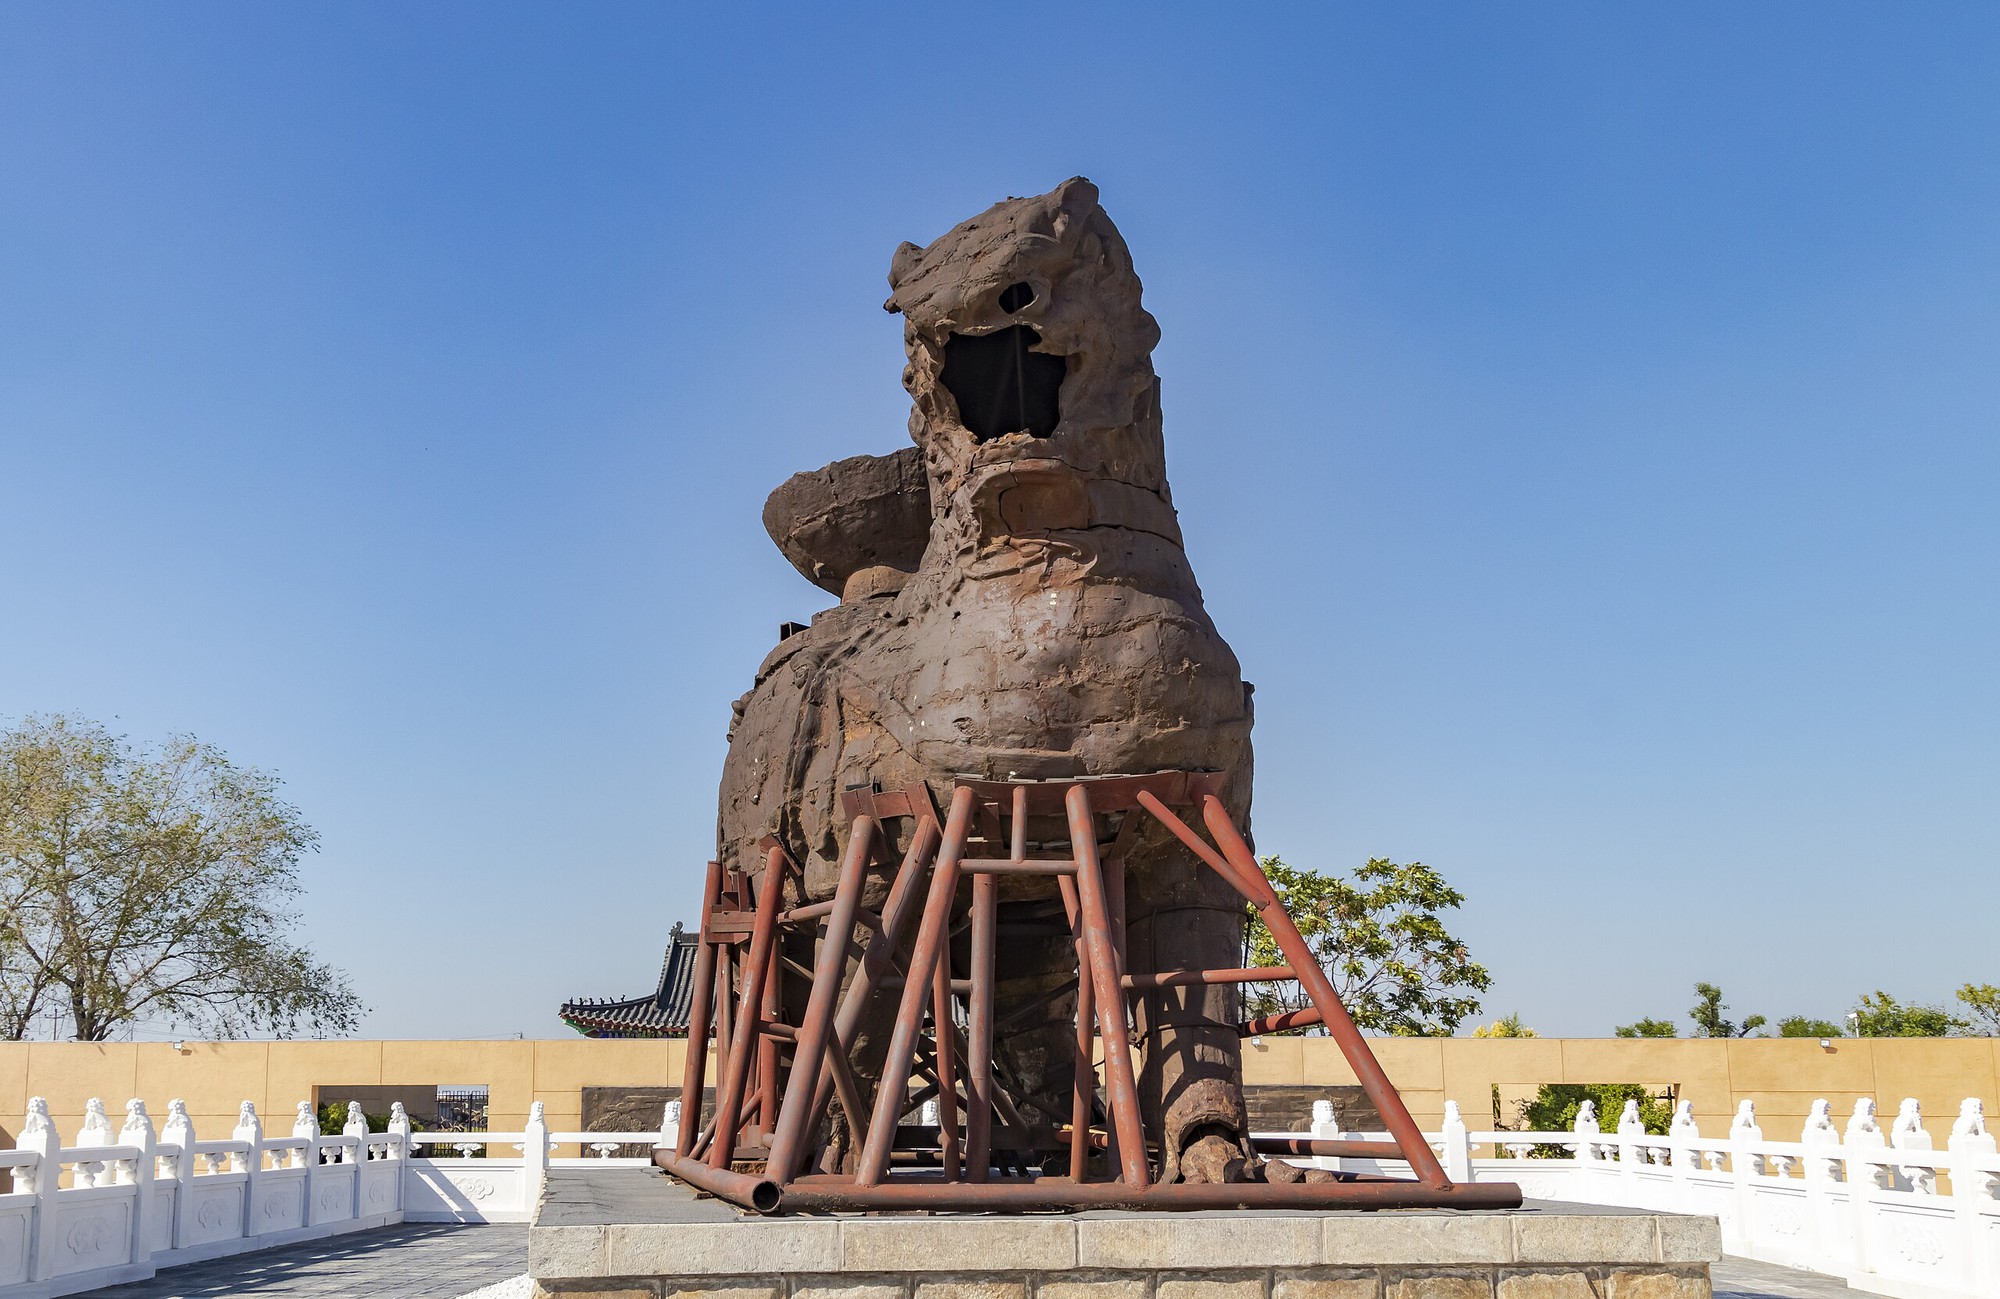 Con sư tử sắt nặng 32 tấn tại Trung Quốc đã tồn tại hàng nghìn năm trước mưa gió, nhưng lại bị đổ do sự bảo vệ 'tự cho mình là đúng' của các chuyên gia!- Ảnh 4.